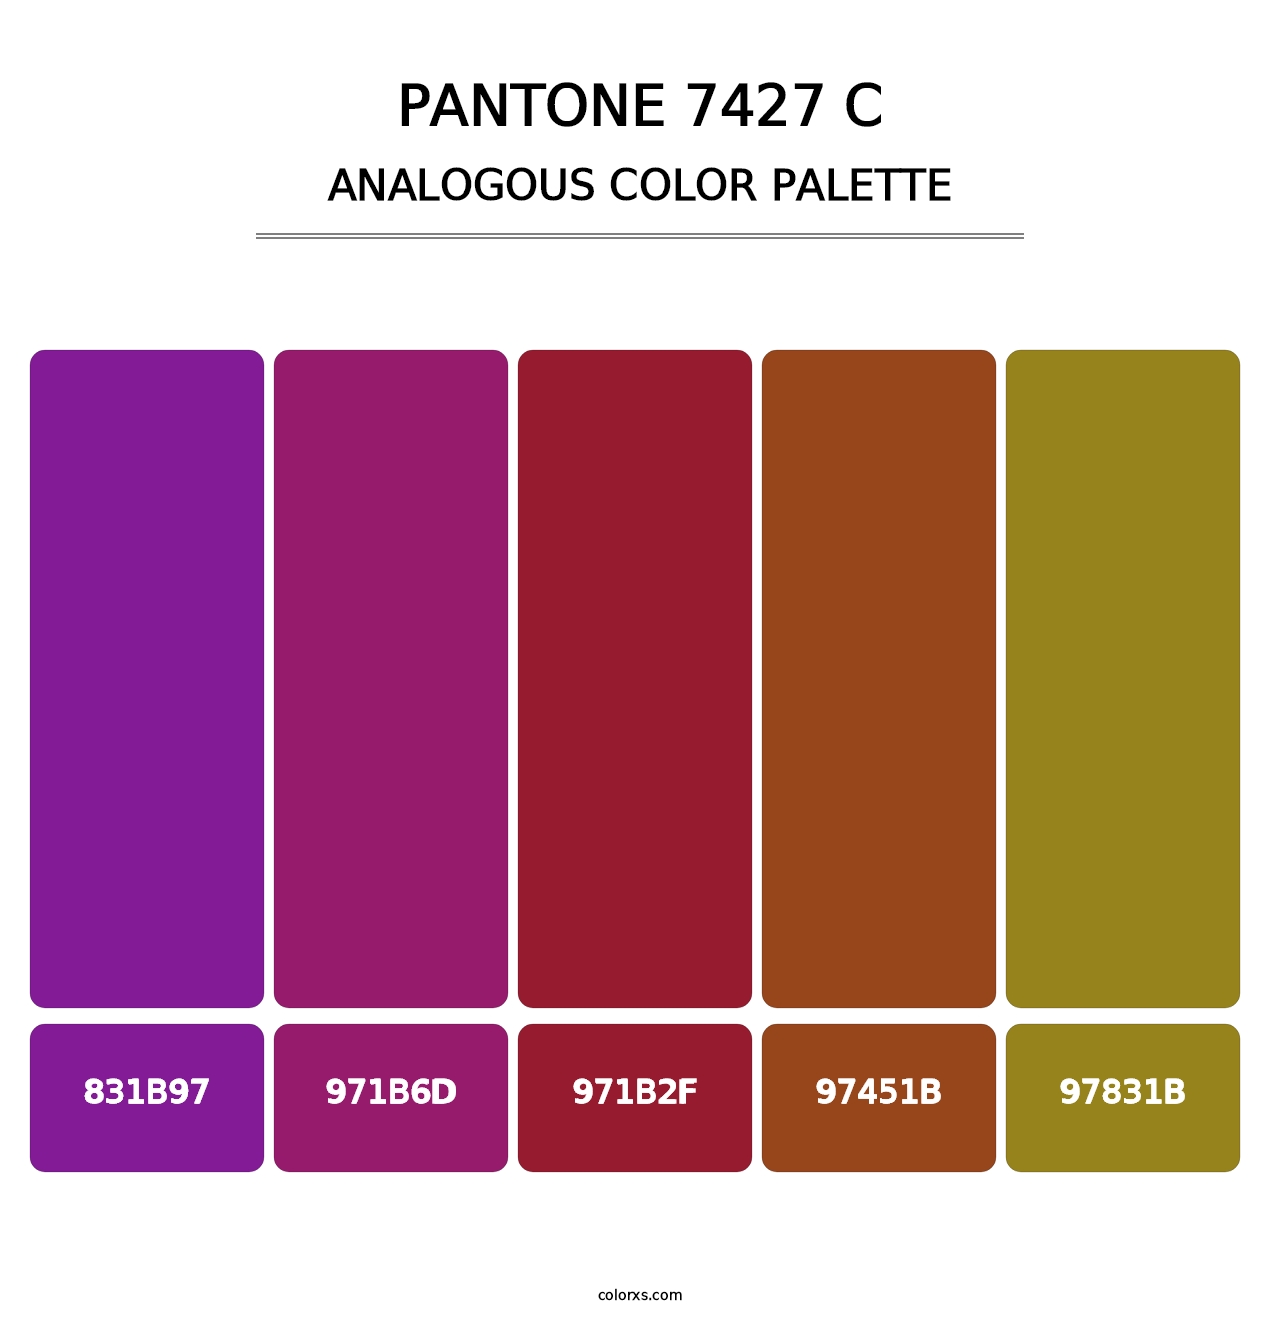 PANTONE 7427 C - Analogous Color Palette